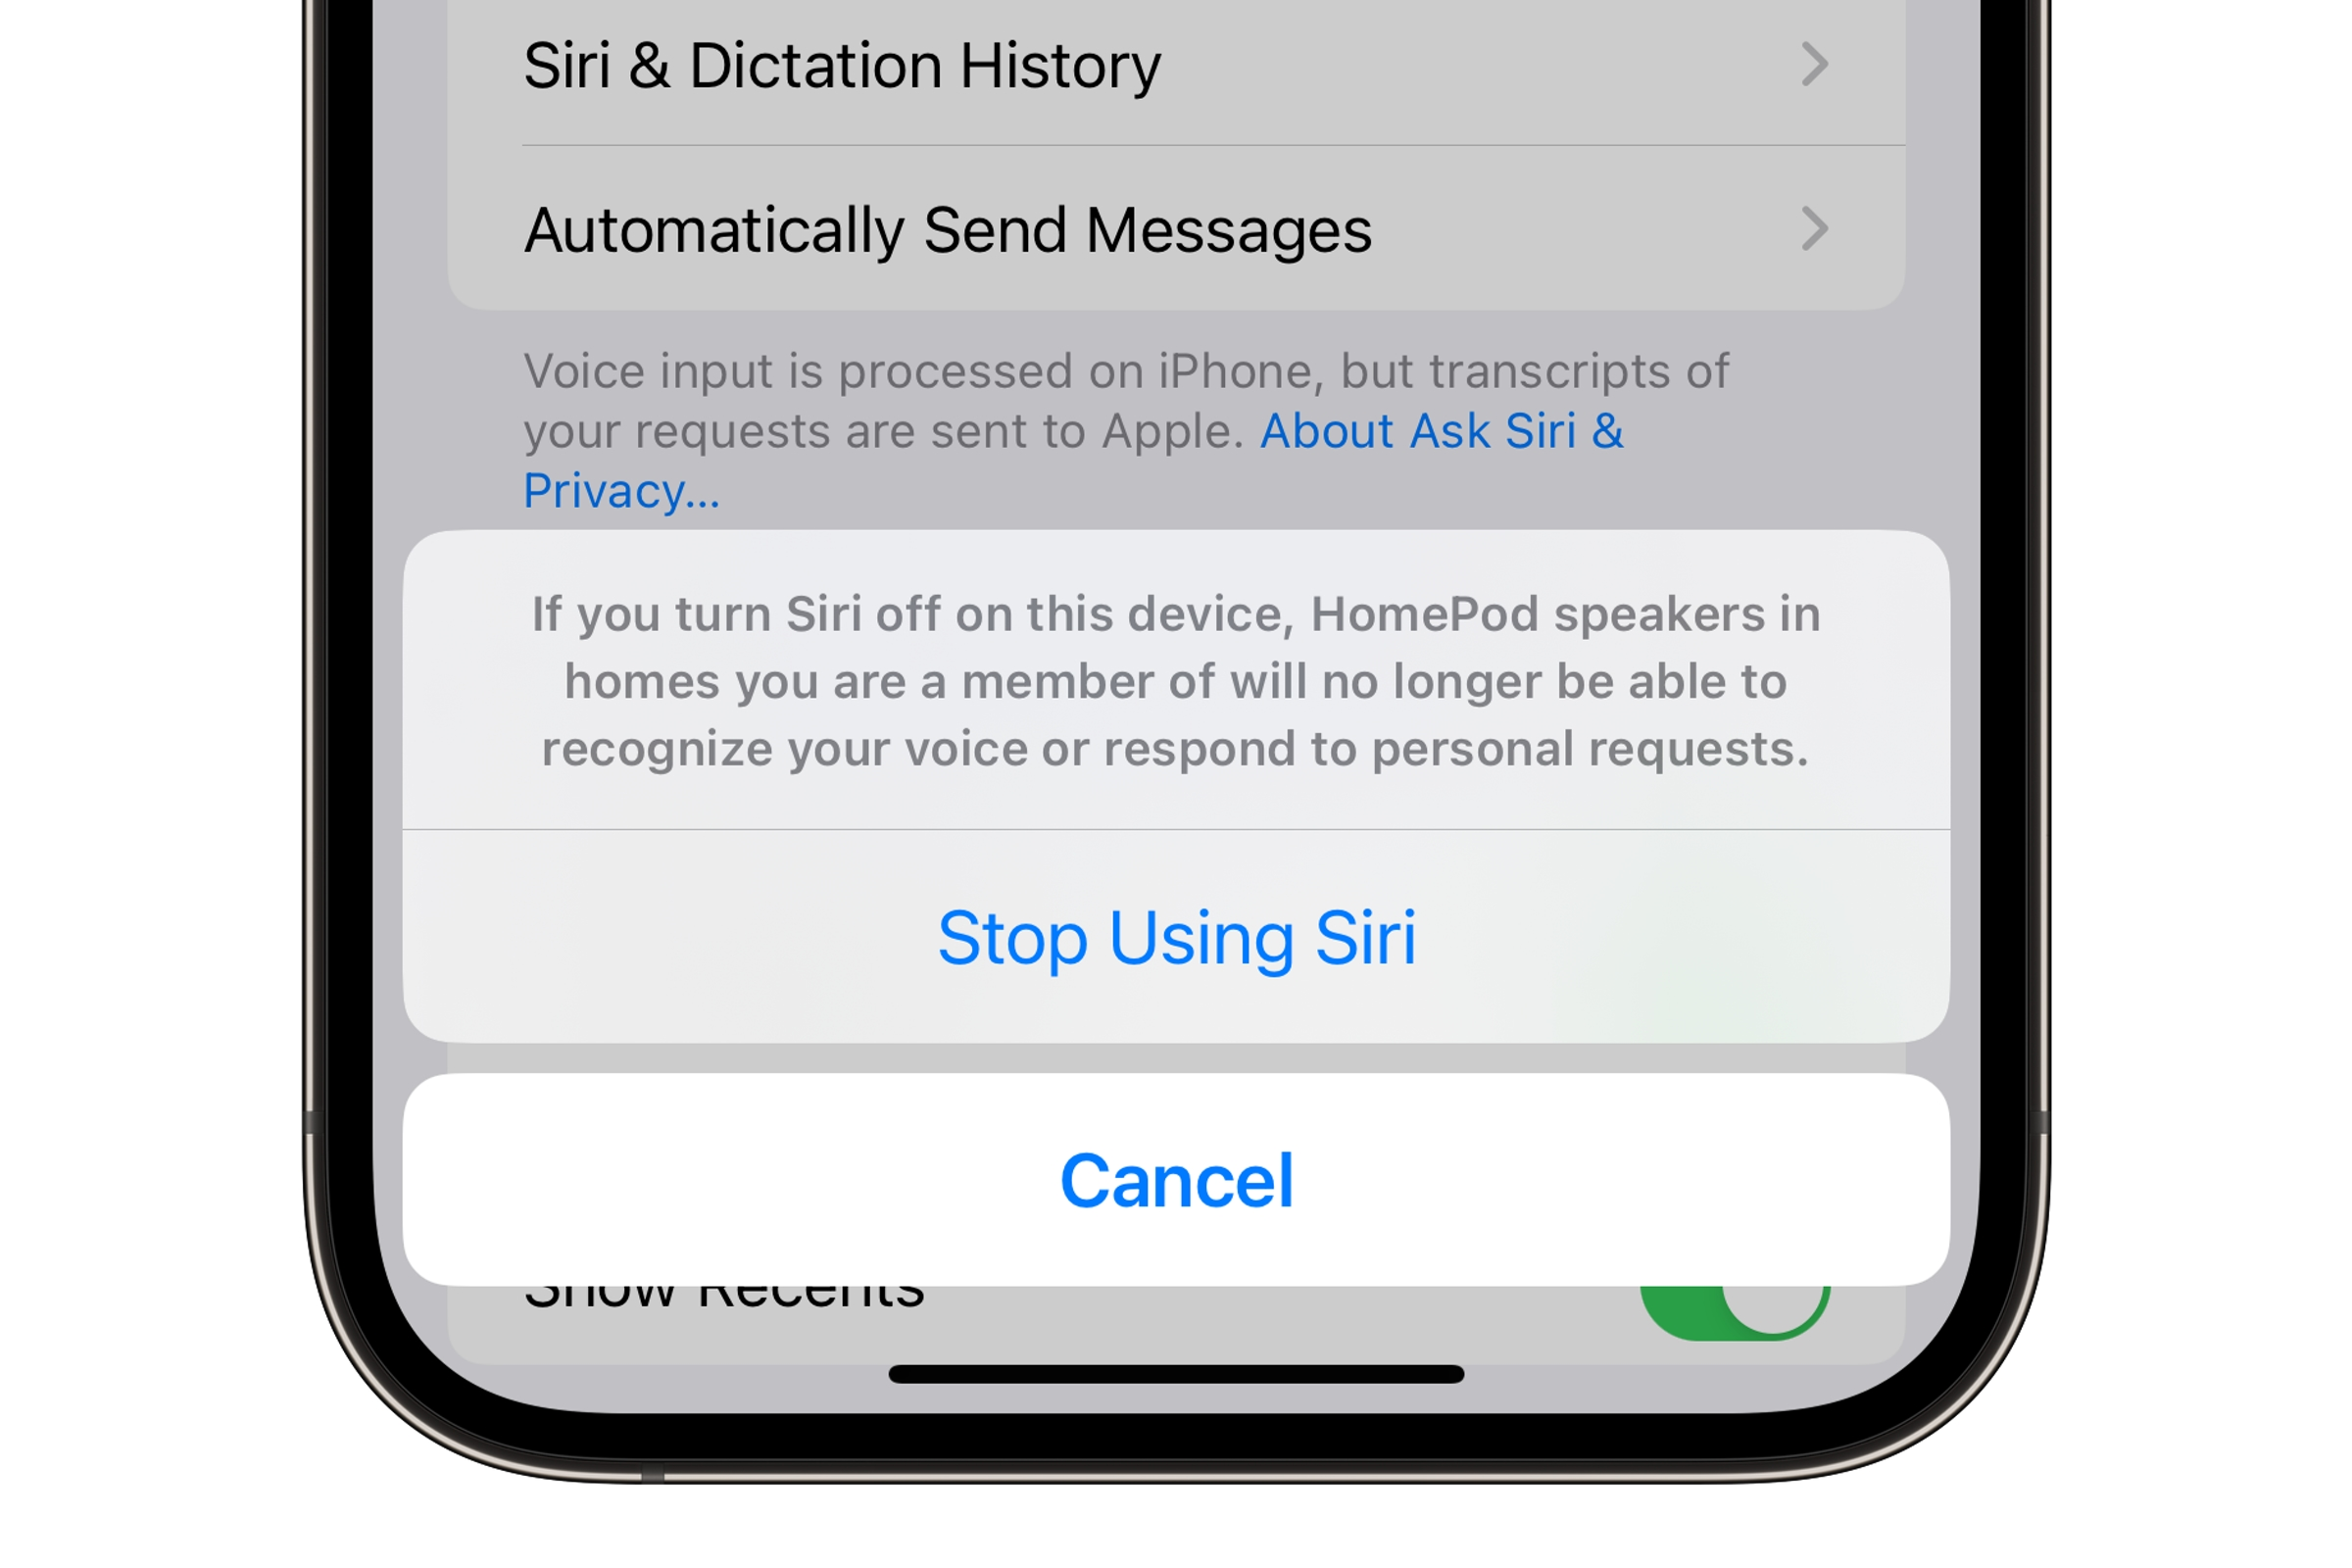 Confirmación de dejar de usar Siri